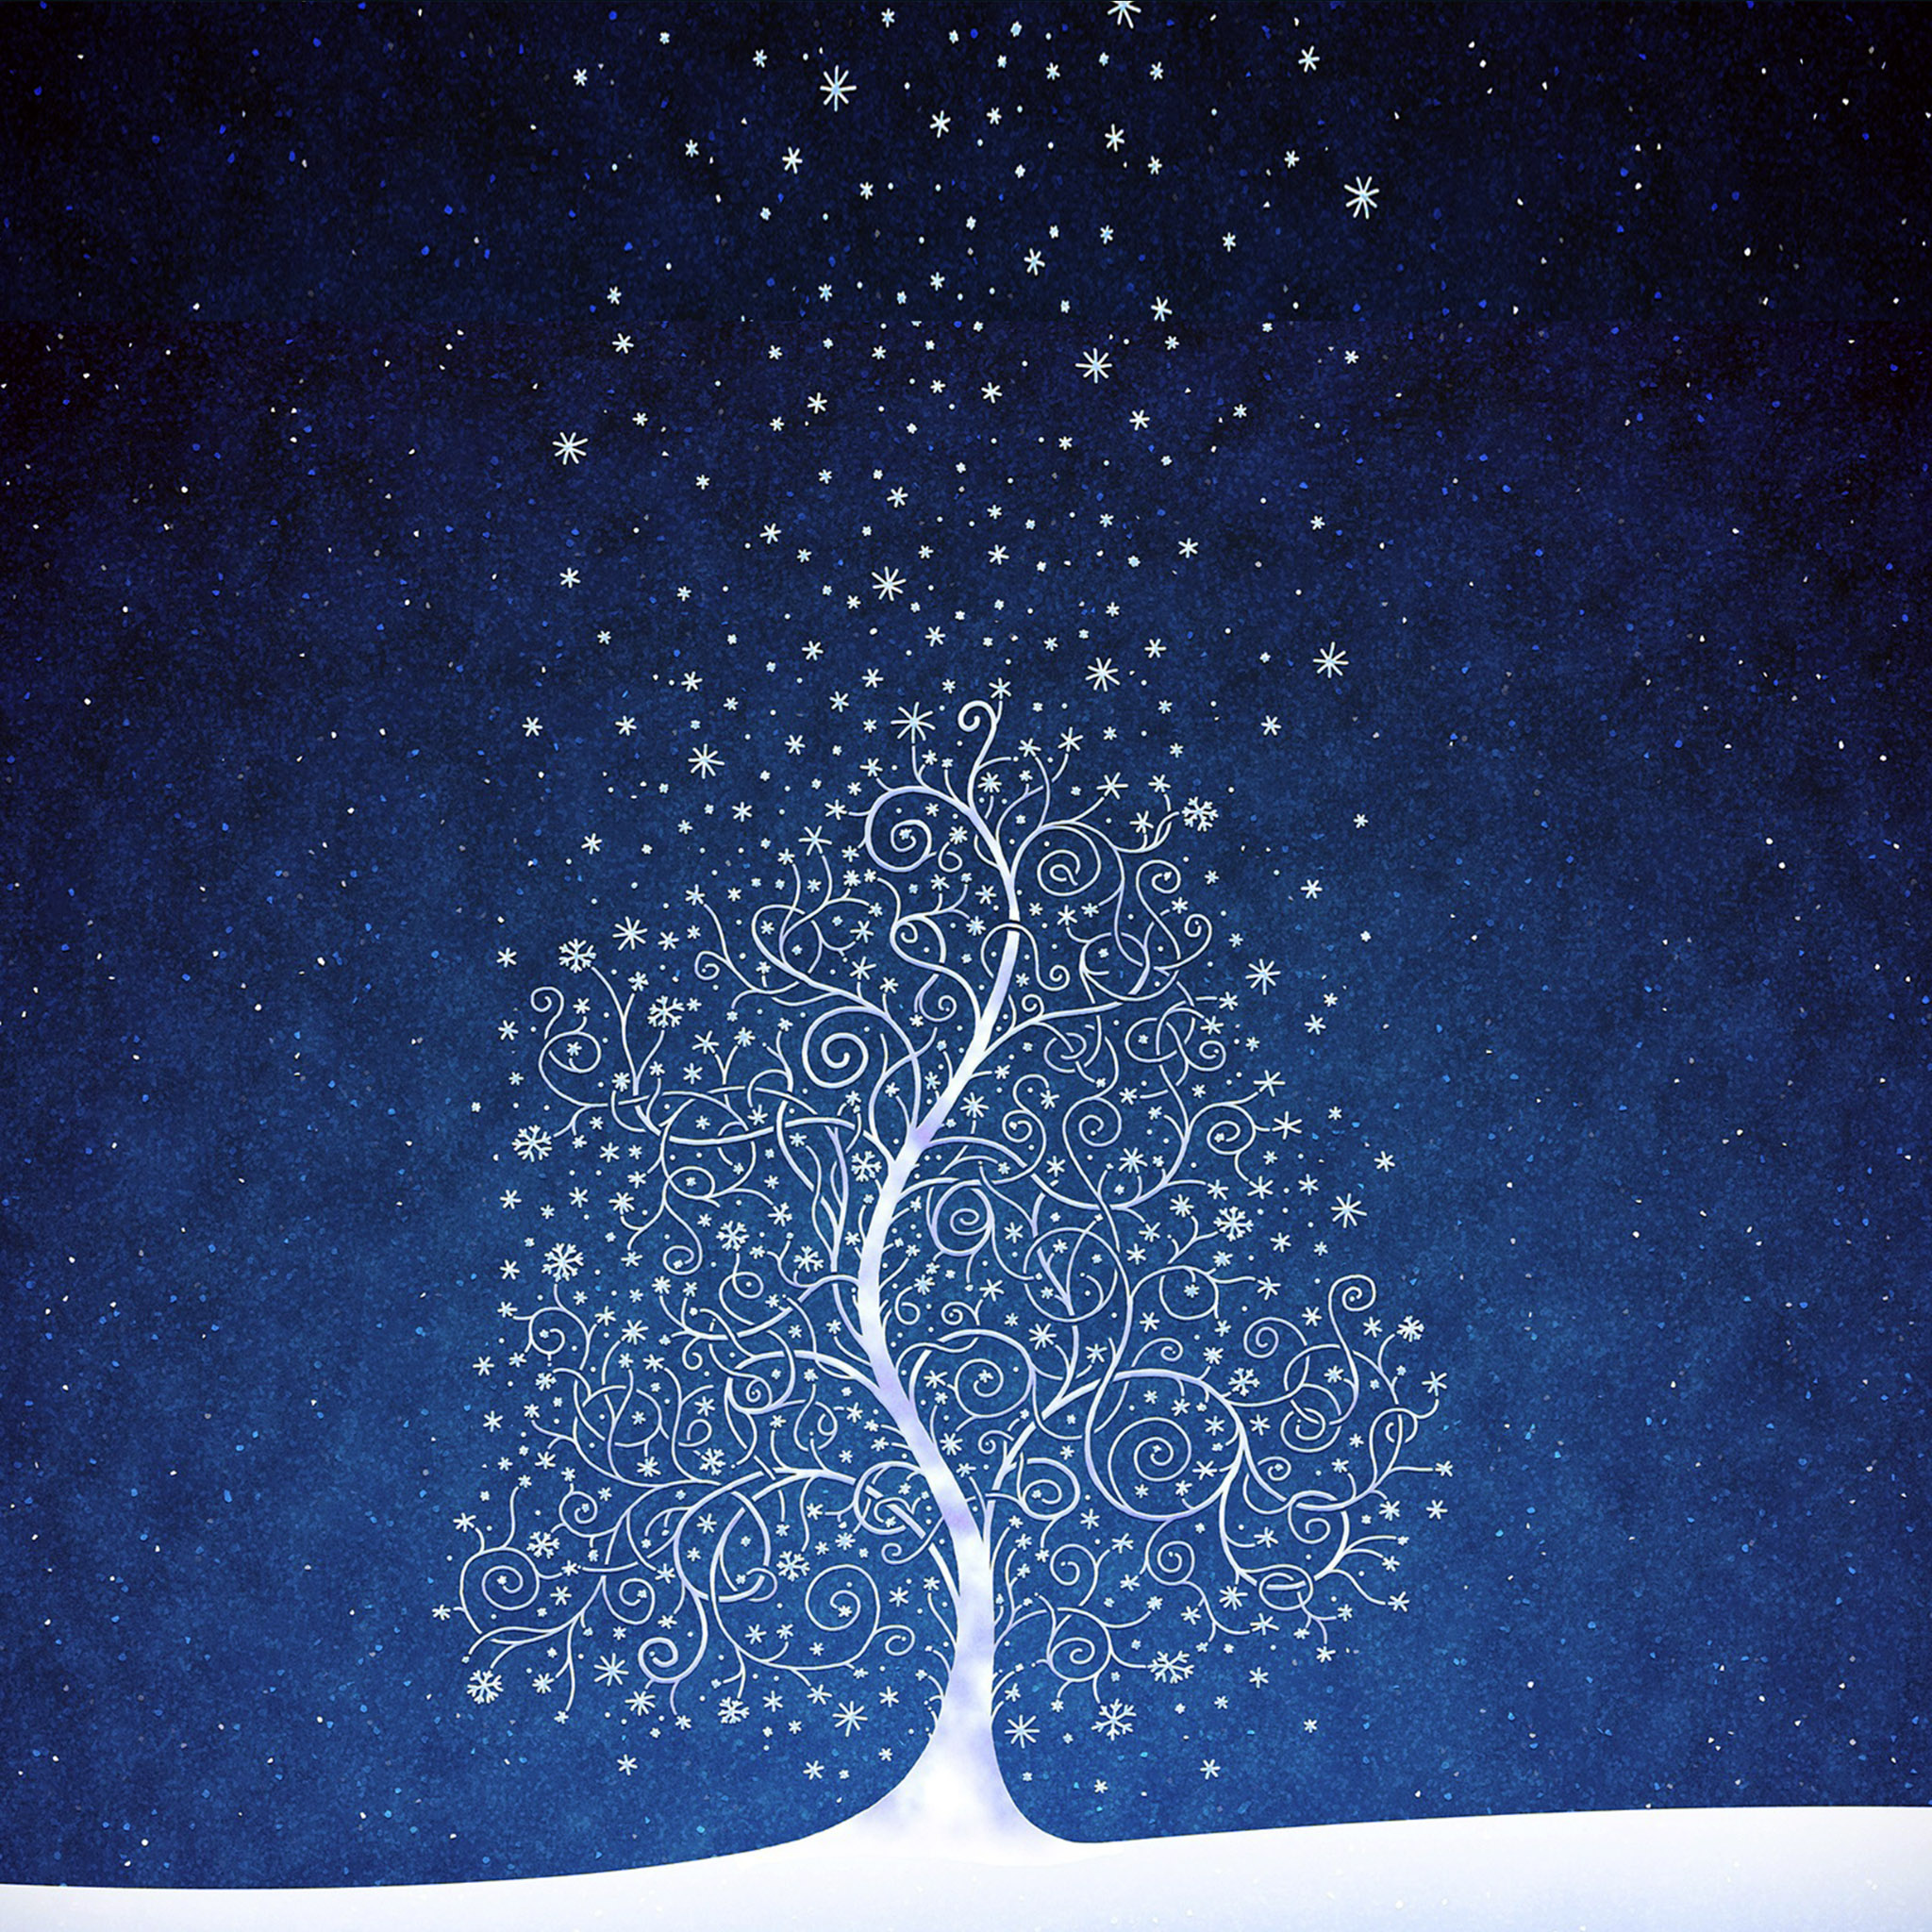 人気93位 綺麗な雪夜のイラスト Ipad タブレット壁紙ギャラリー